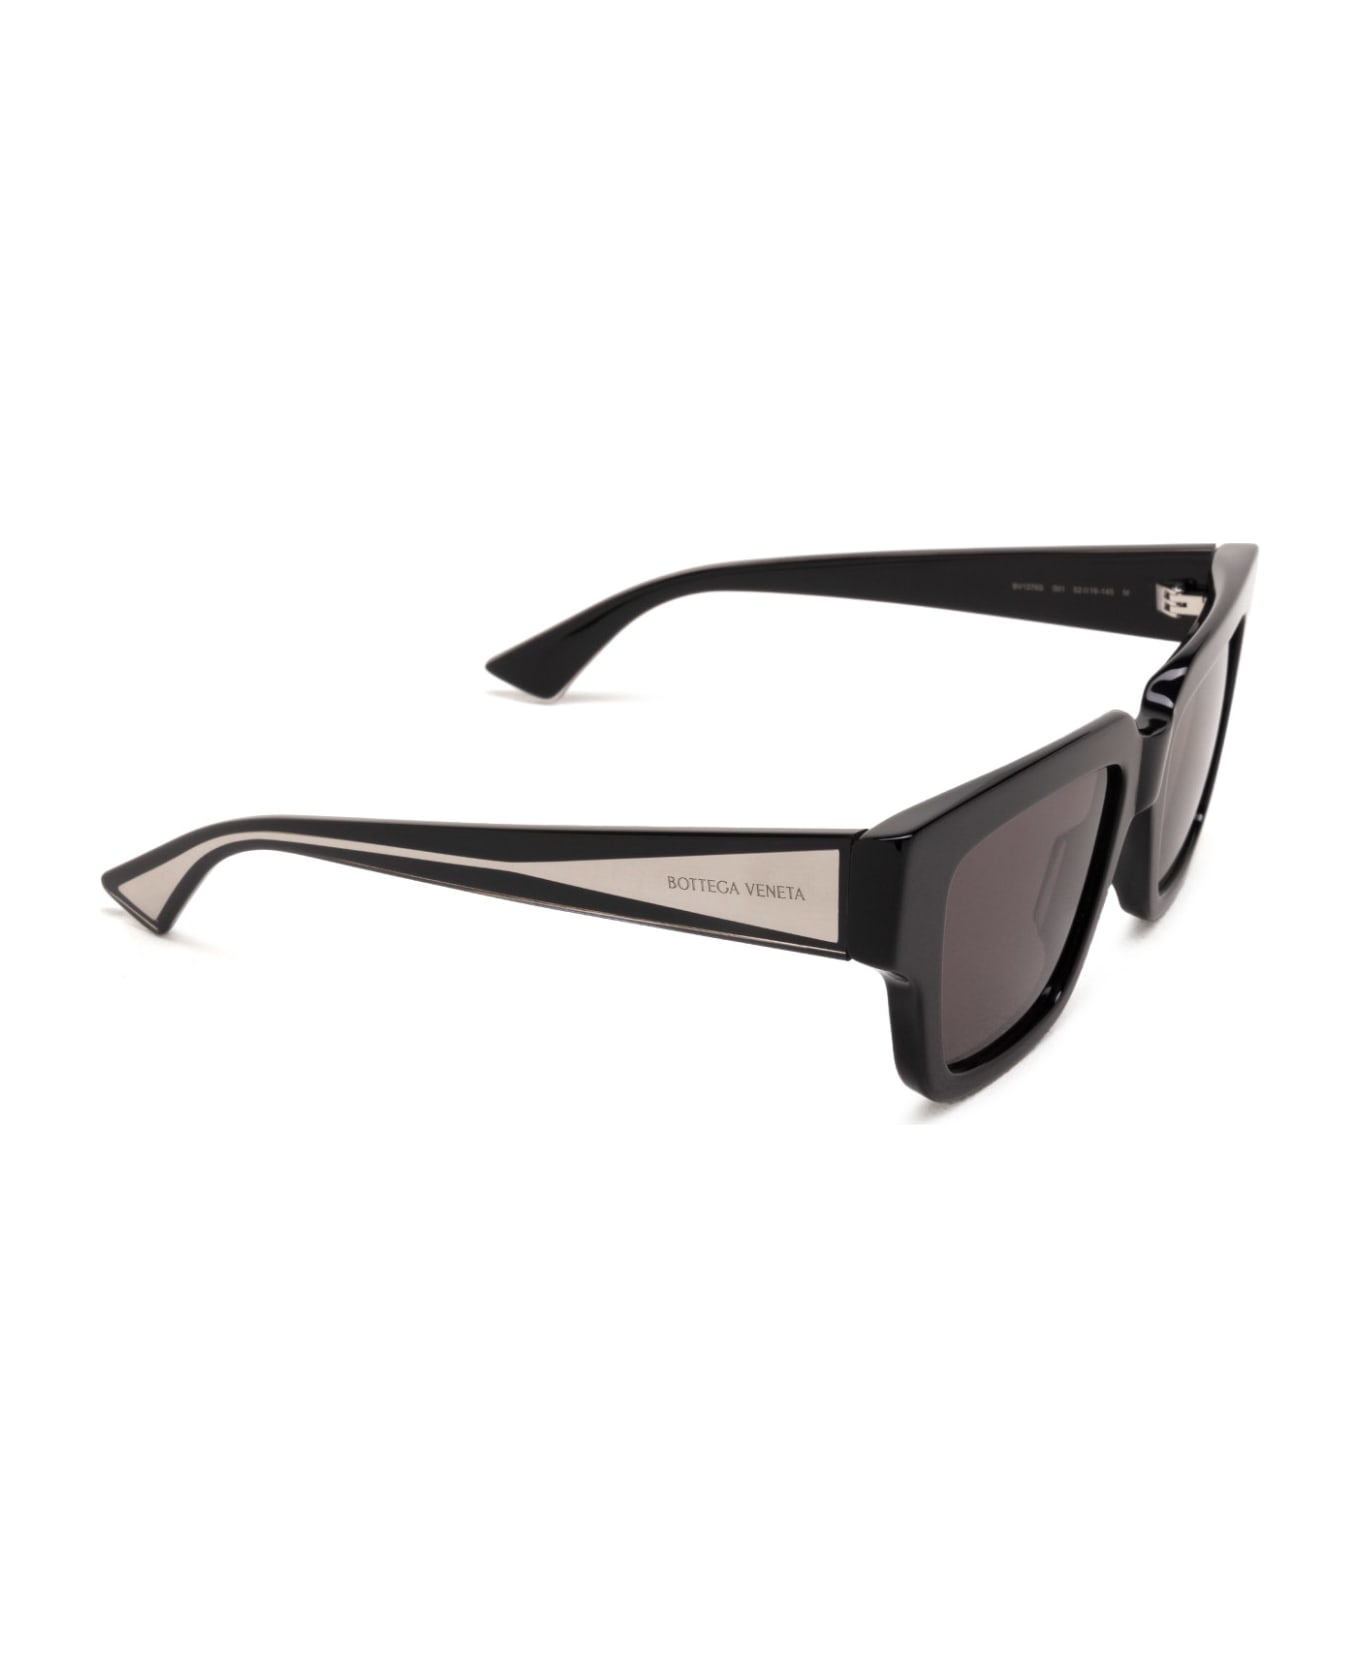 Bottega Veneta Eyewear Bv1276s Black Sunglasses - Black